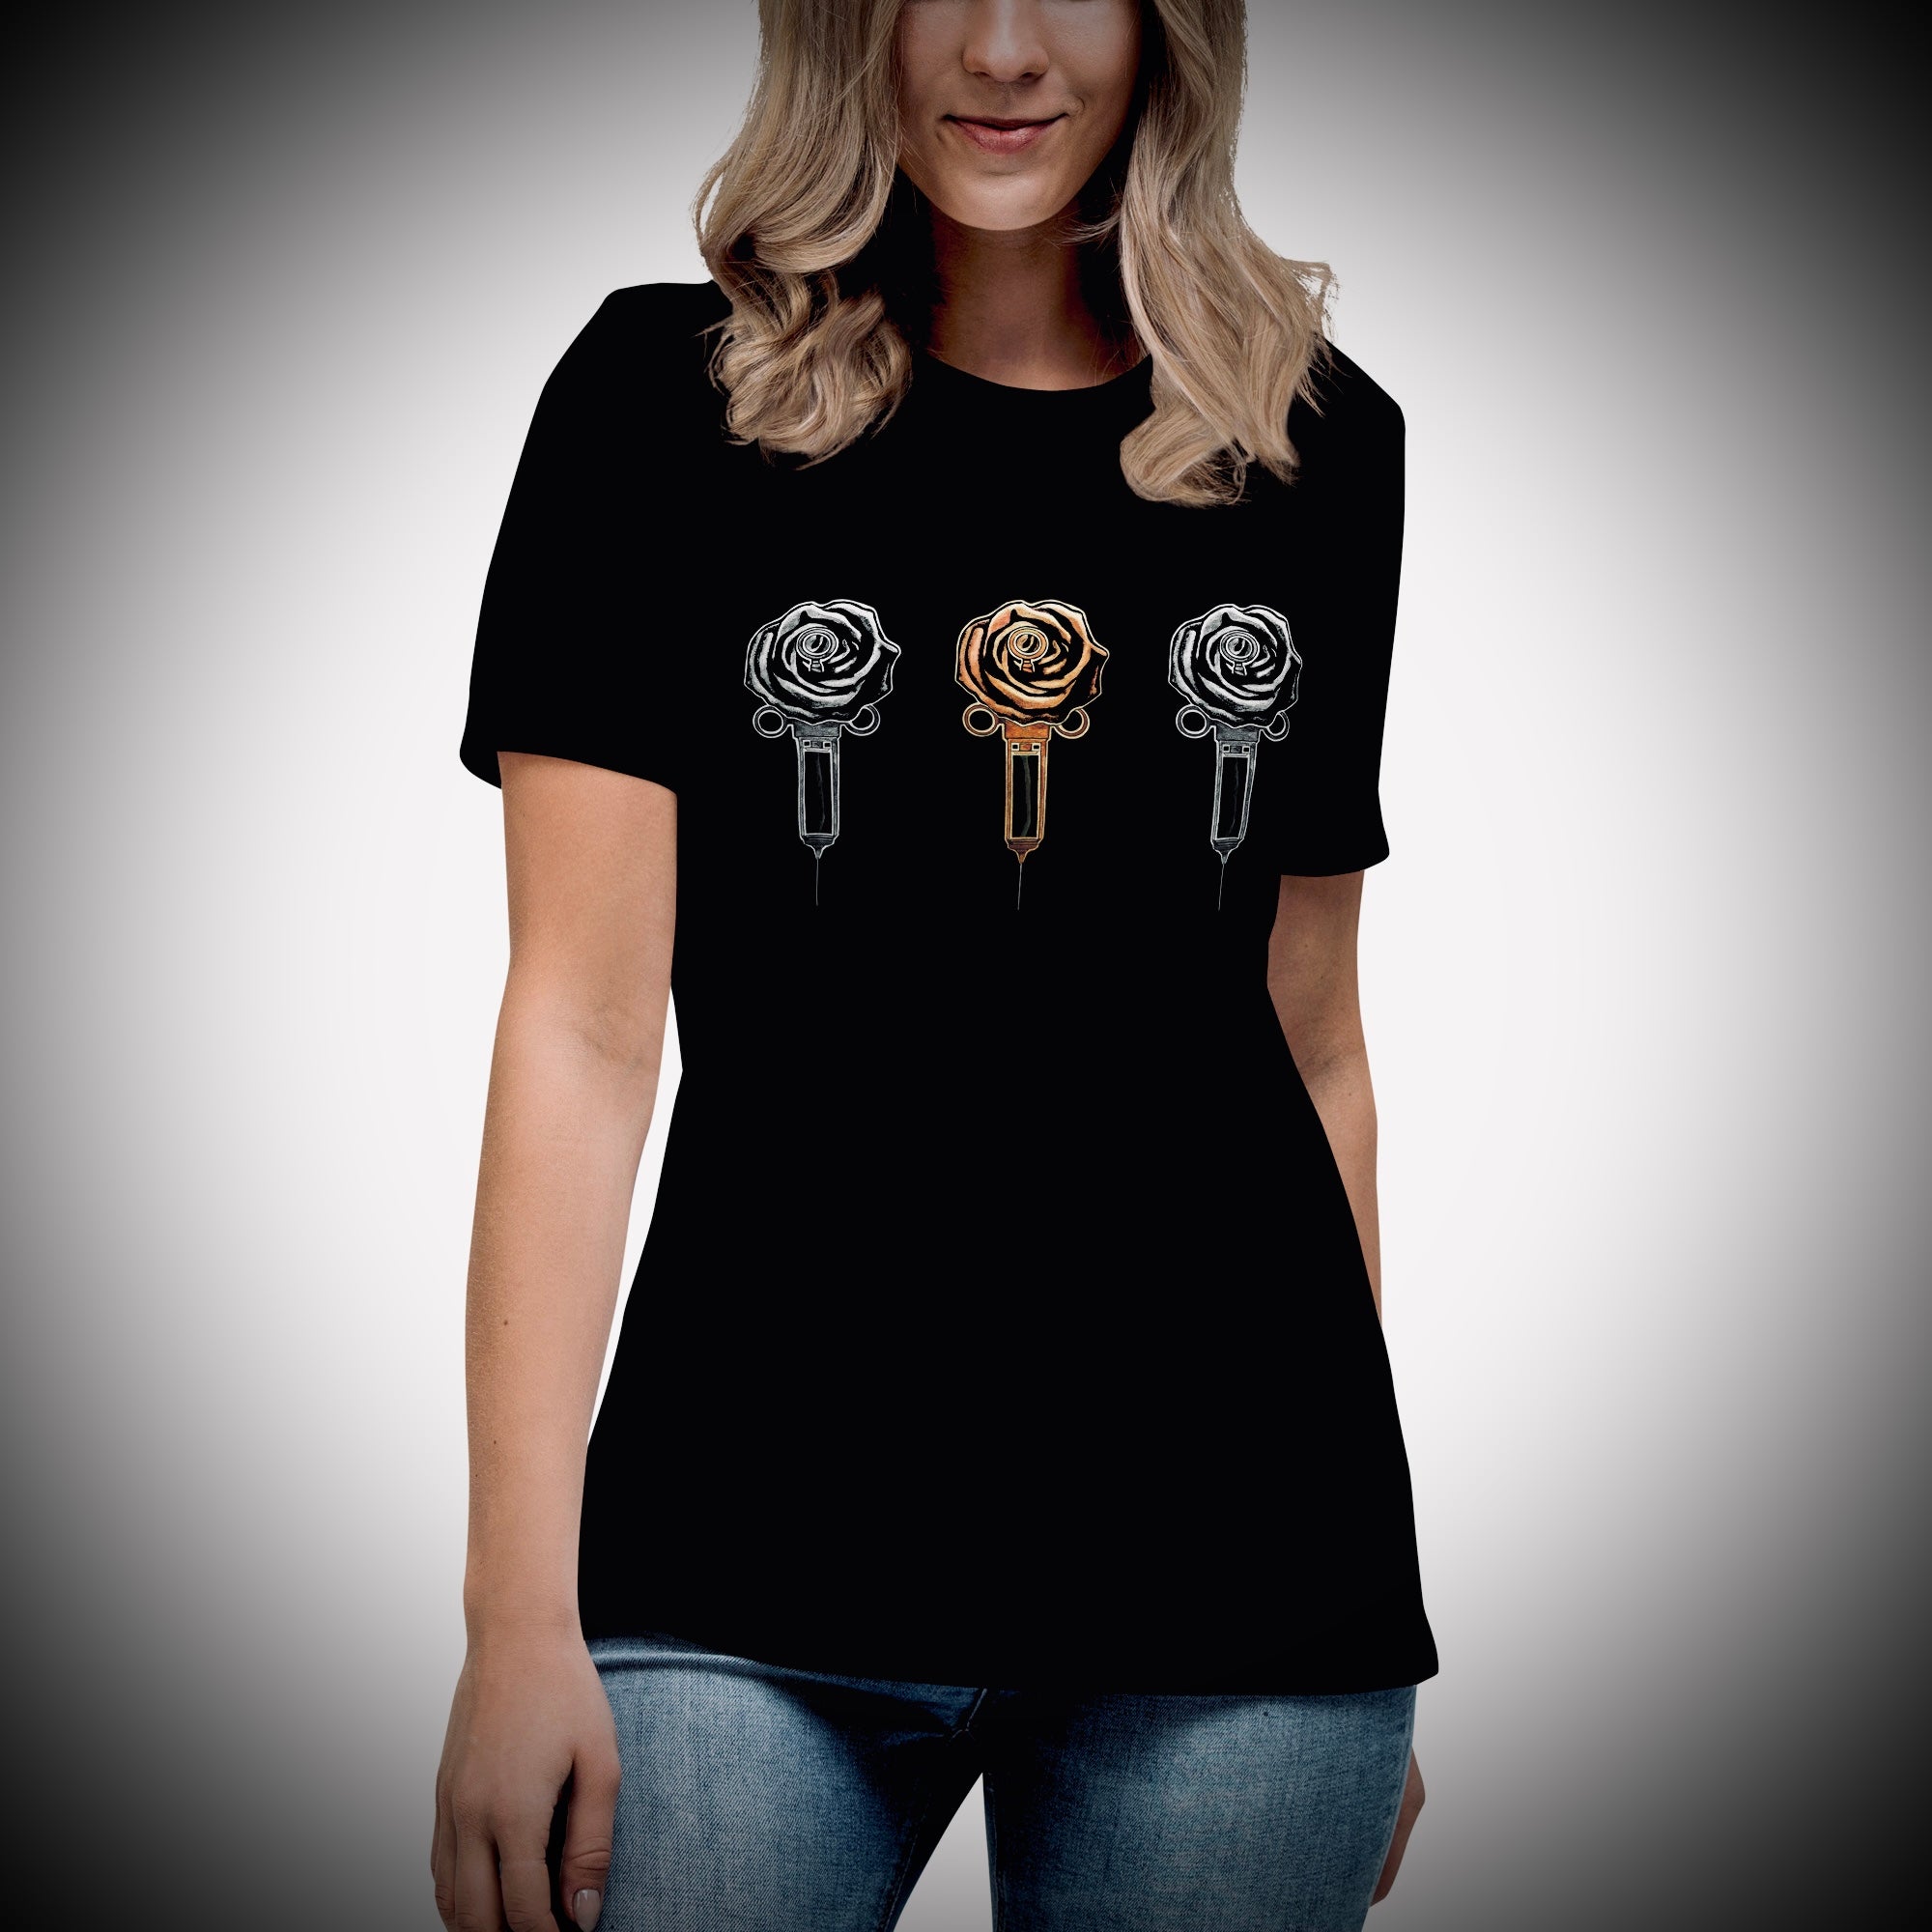 3 Roses - Women's Relaxed Black T-Shirt